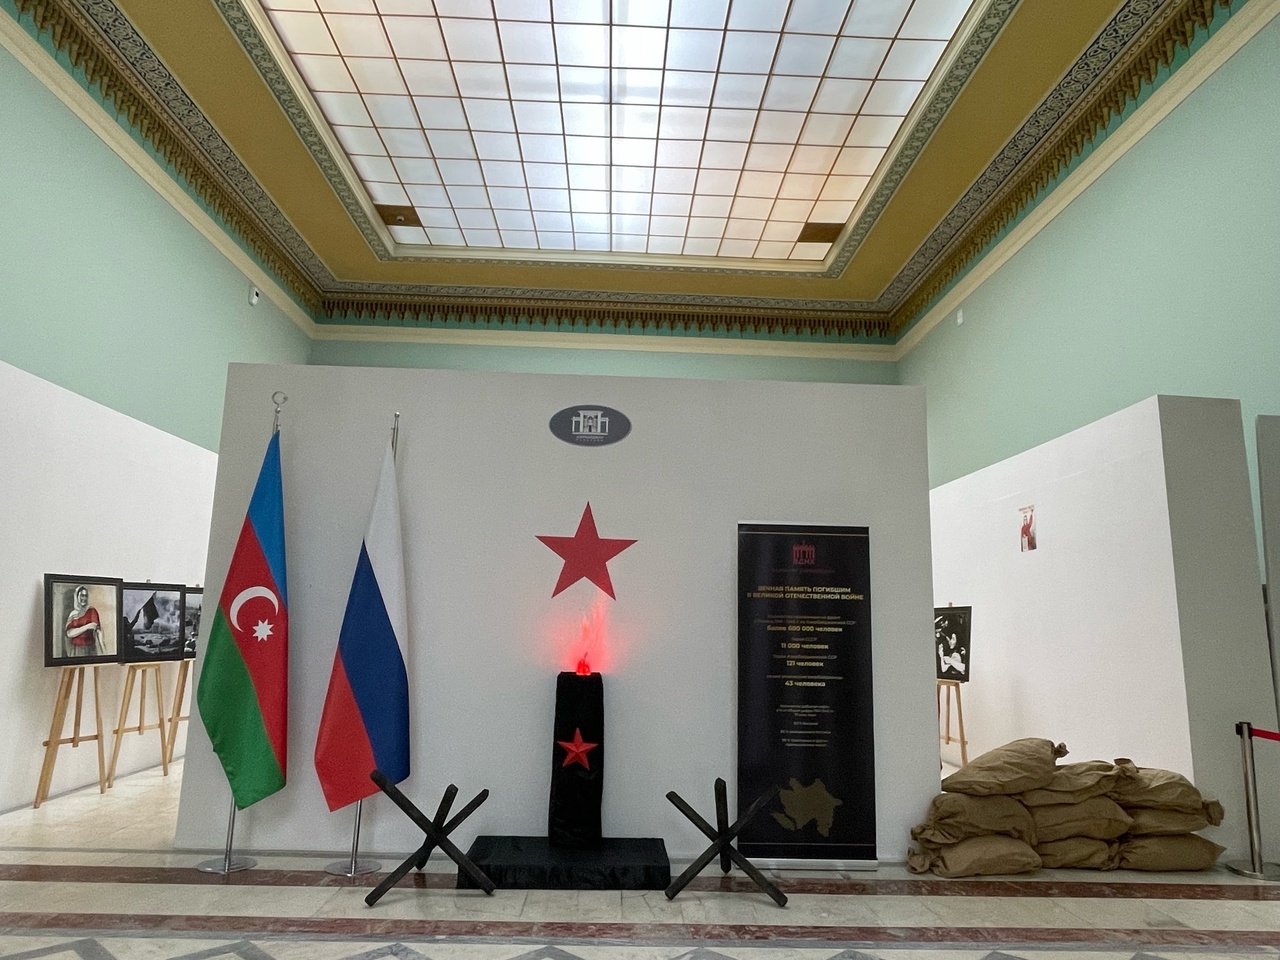 Одна на всех: День Победы отметили кинопоказом в павильоне Азербайджан на ВДНХ